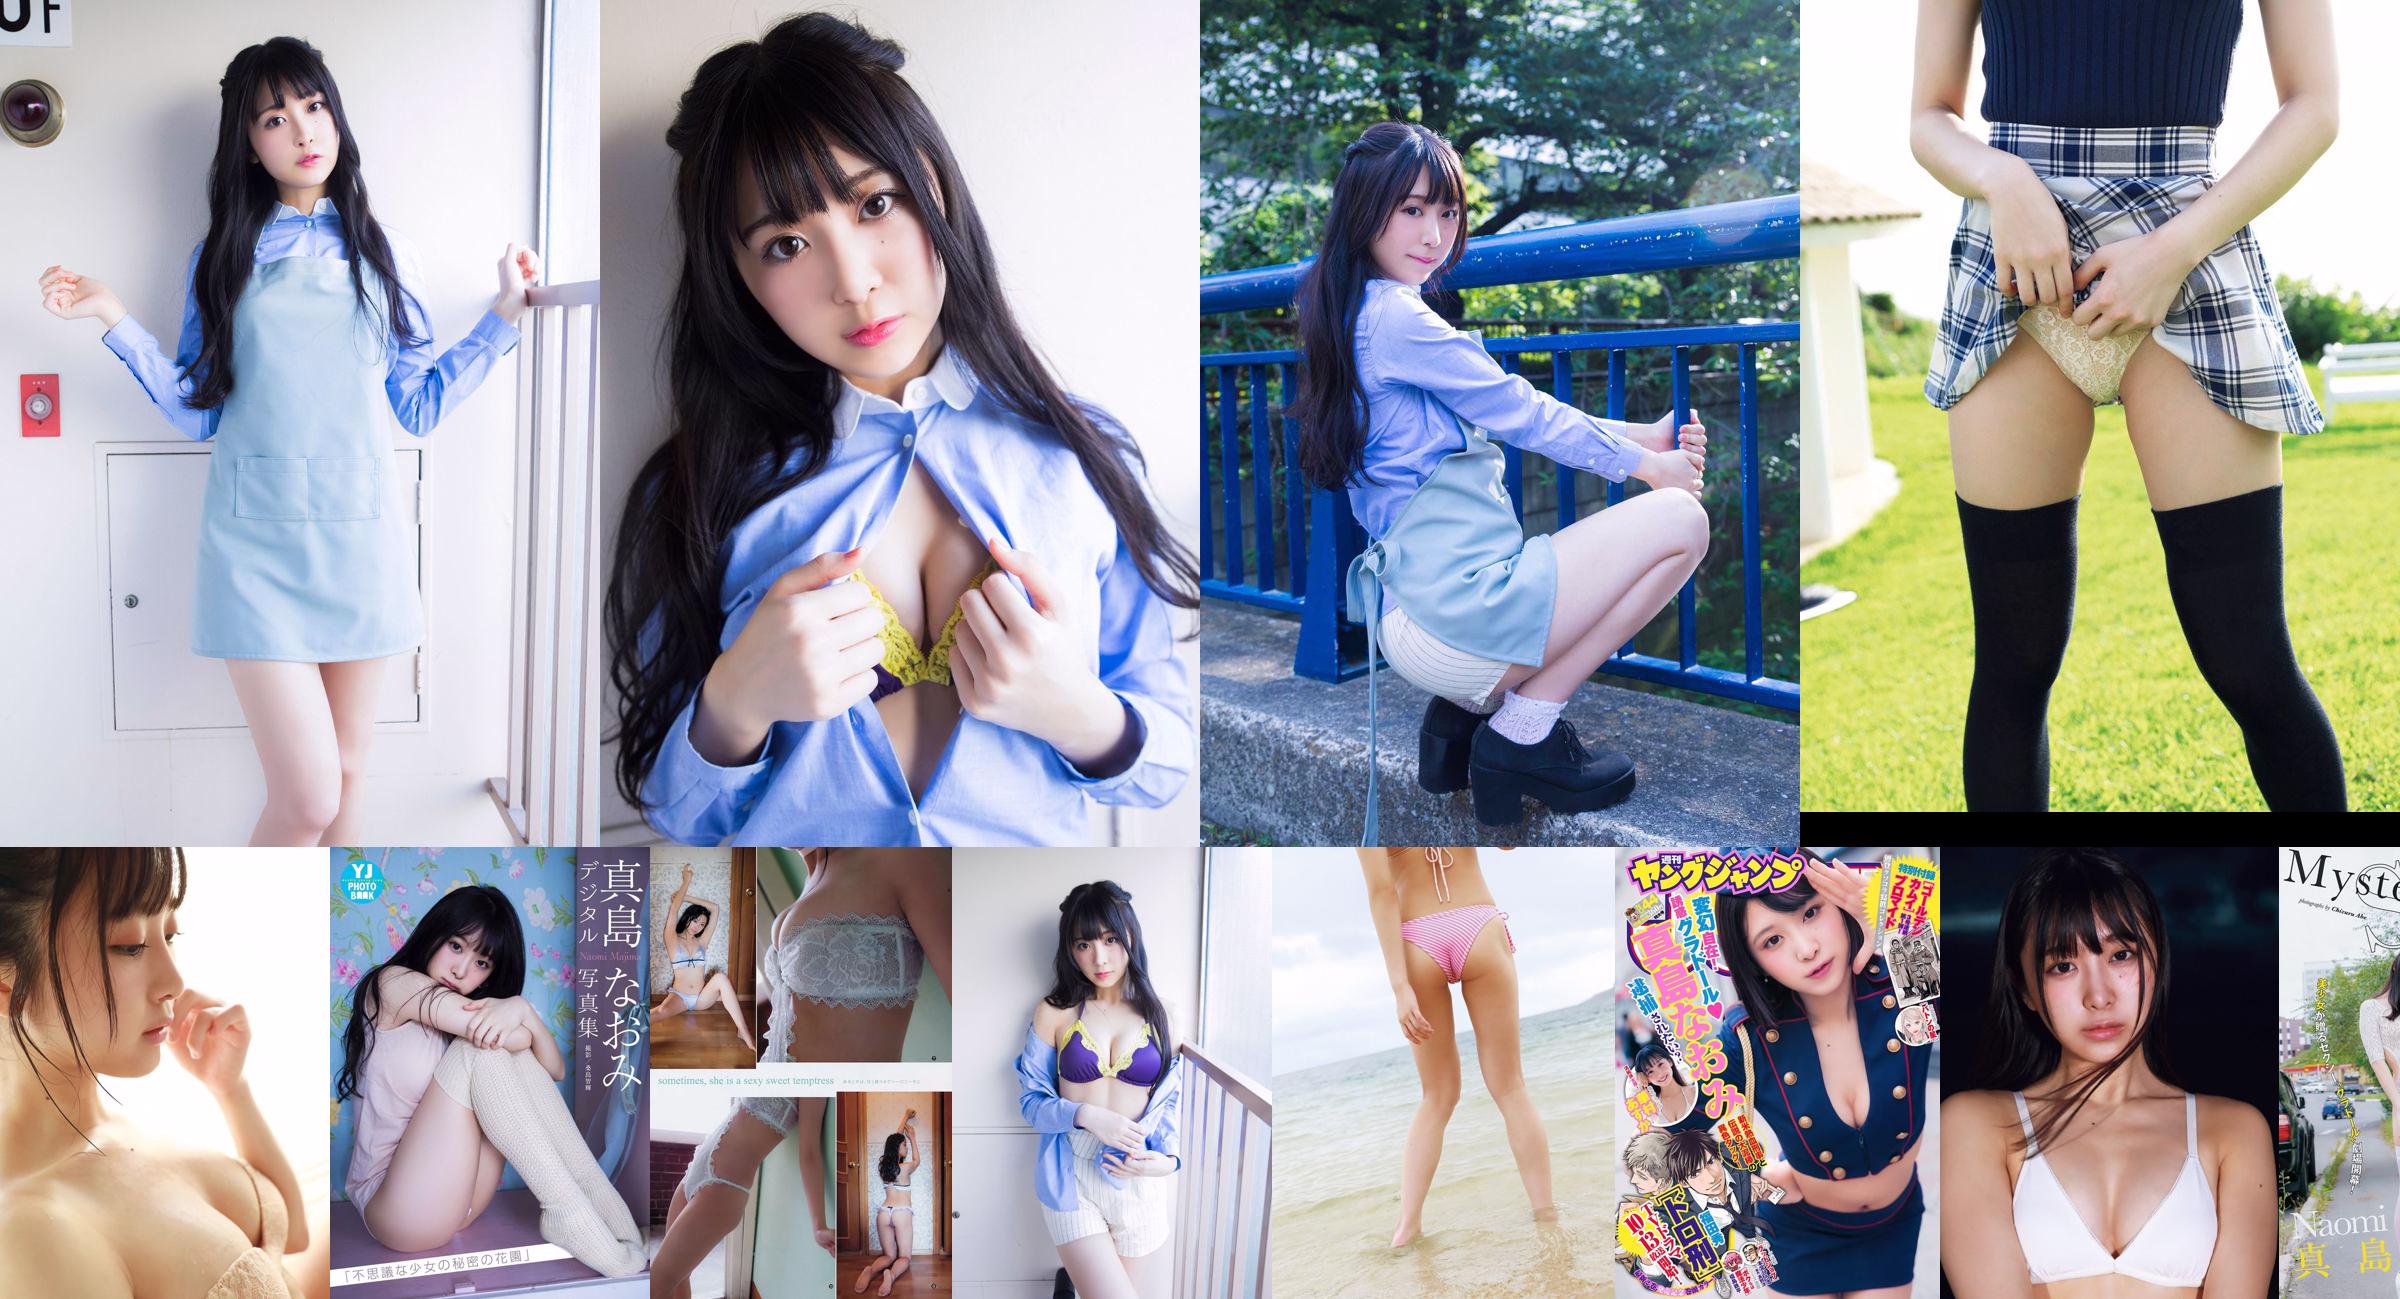 [YS-Web] Vol.851 Nana Mashima "Bella ragazza SEXY!! Ragazza con 9 teste, corpo-bambola!!" No.b9dc8a Pagina 3